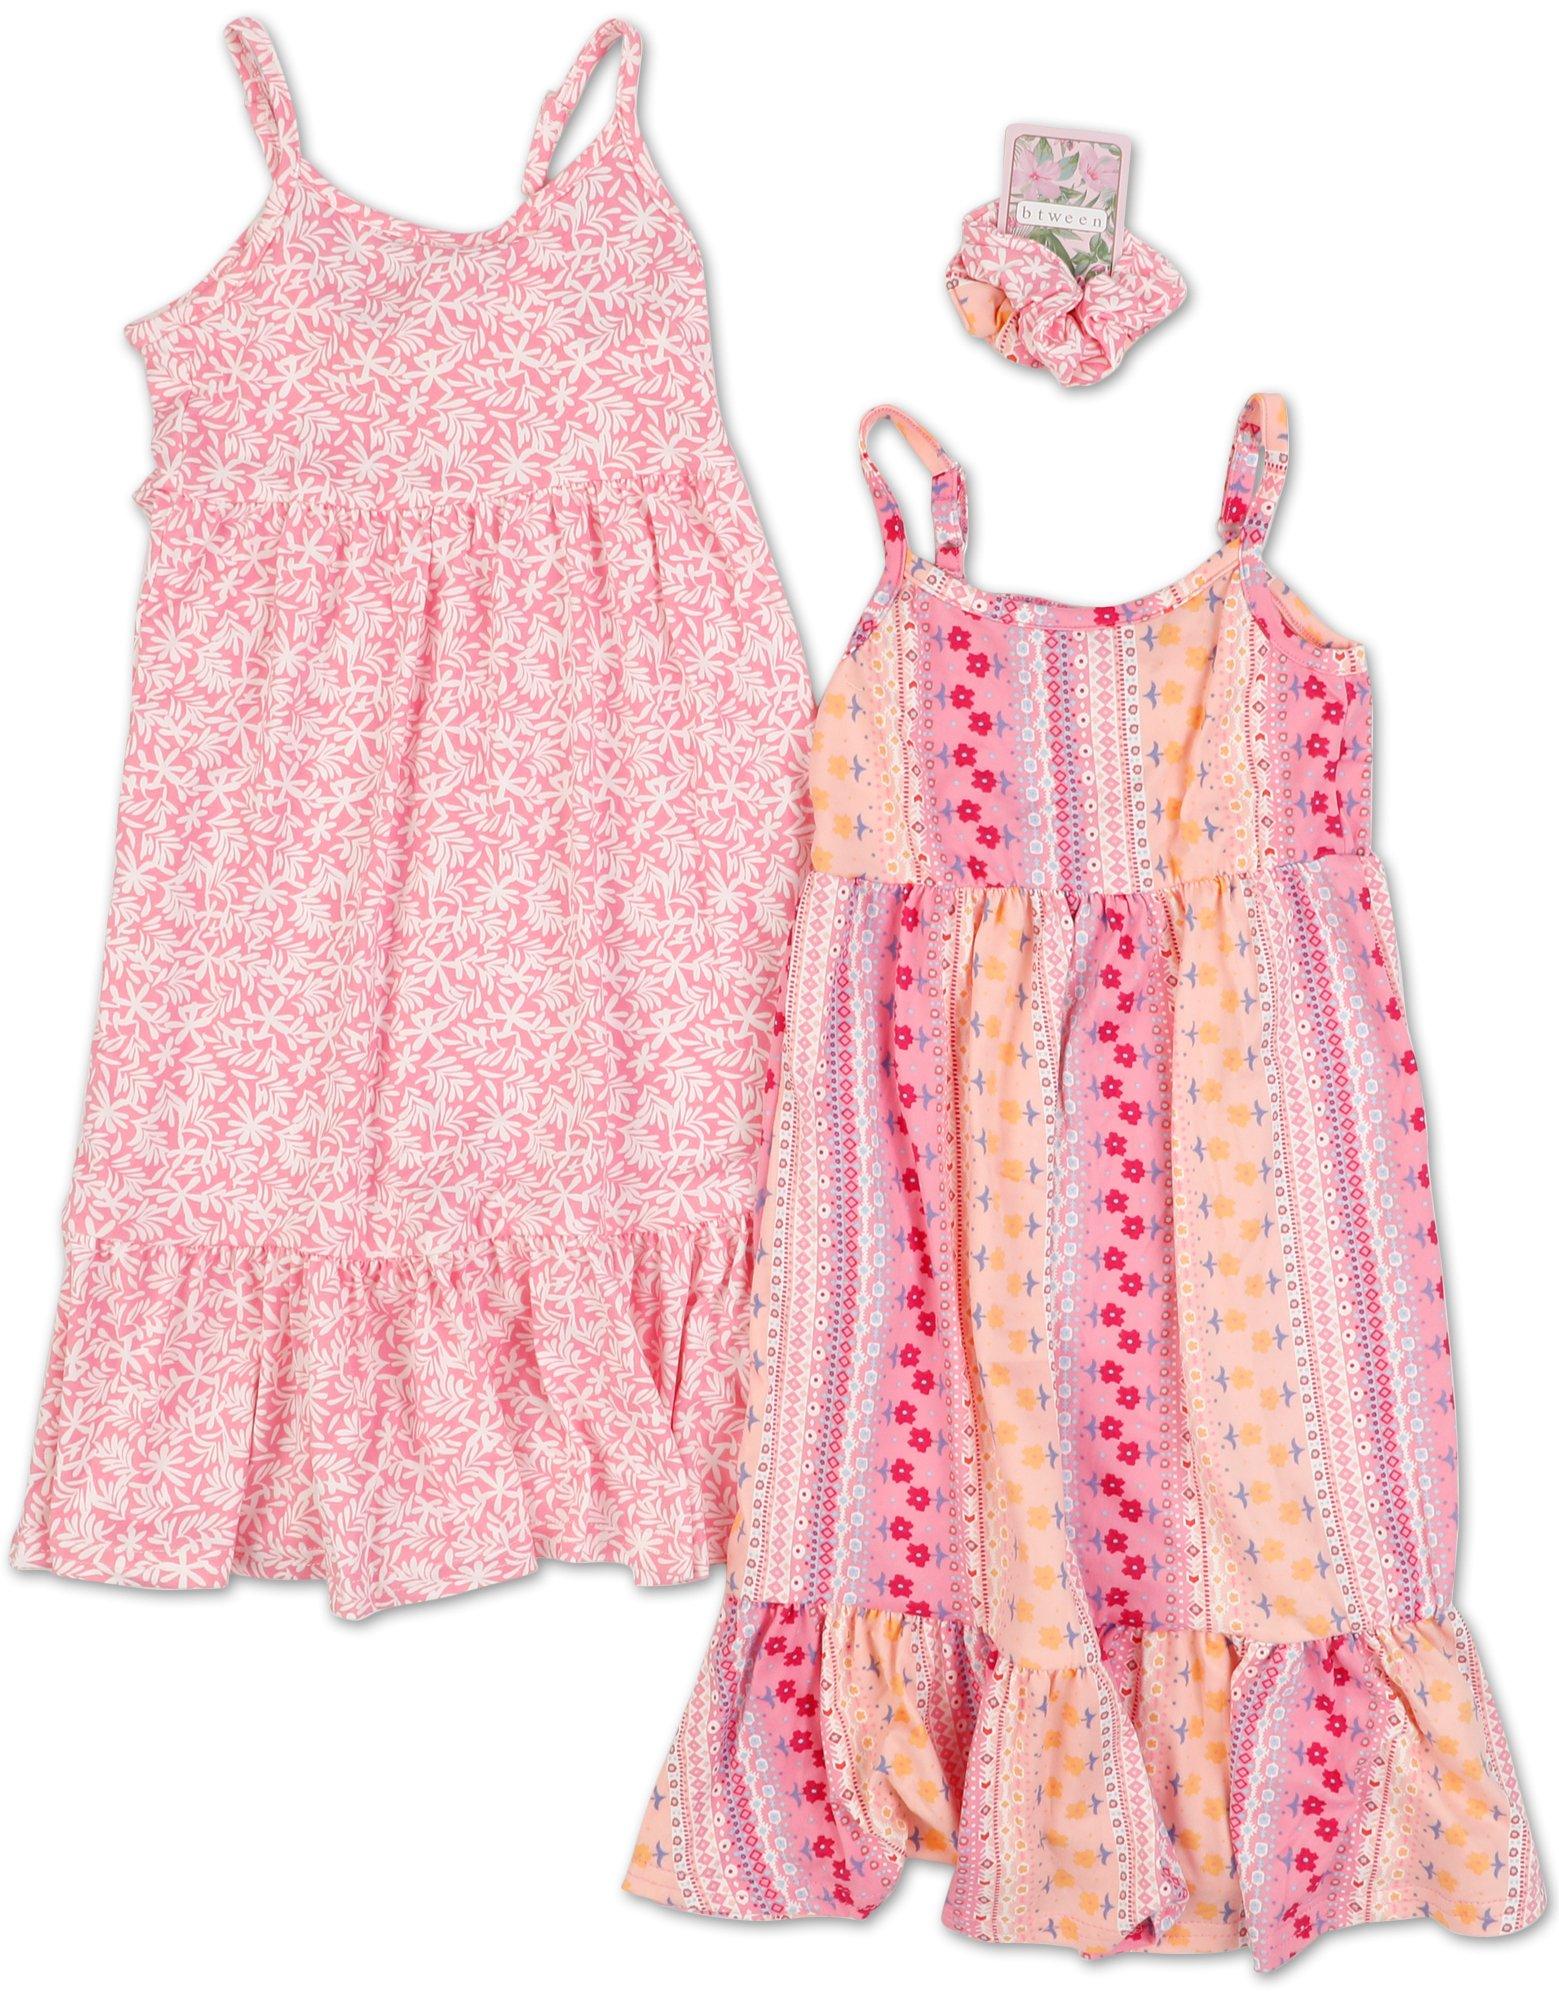 Little Girls 2 Pk Dresses